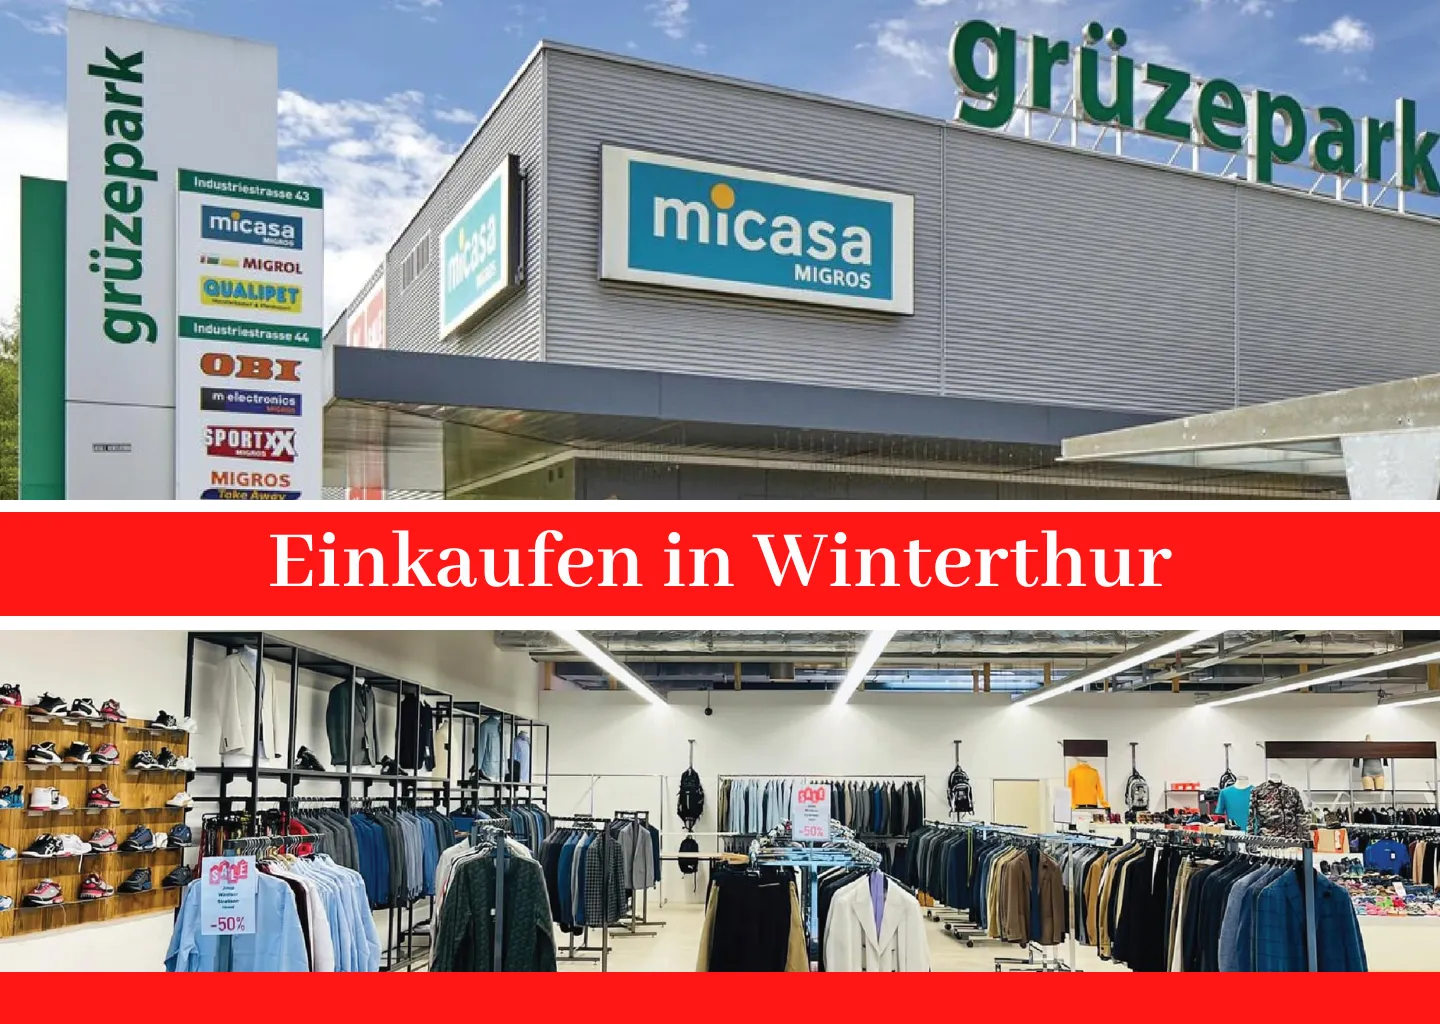 Einkaufen in Winterthur: Ein Ort für Stil und Vielfalt